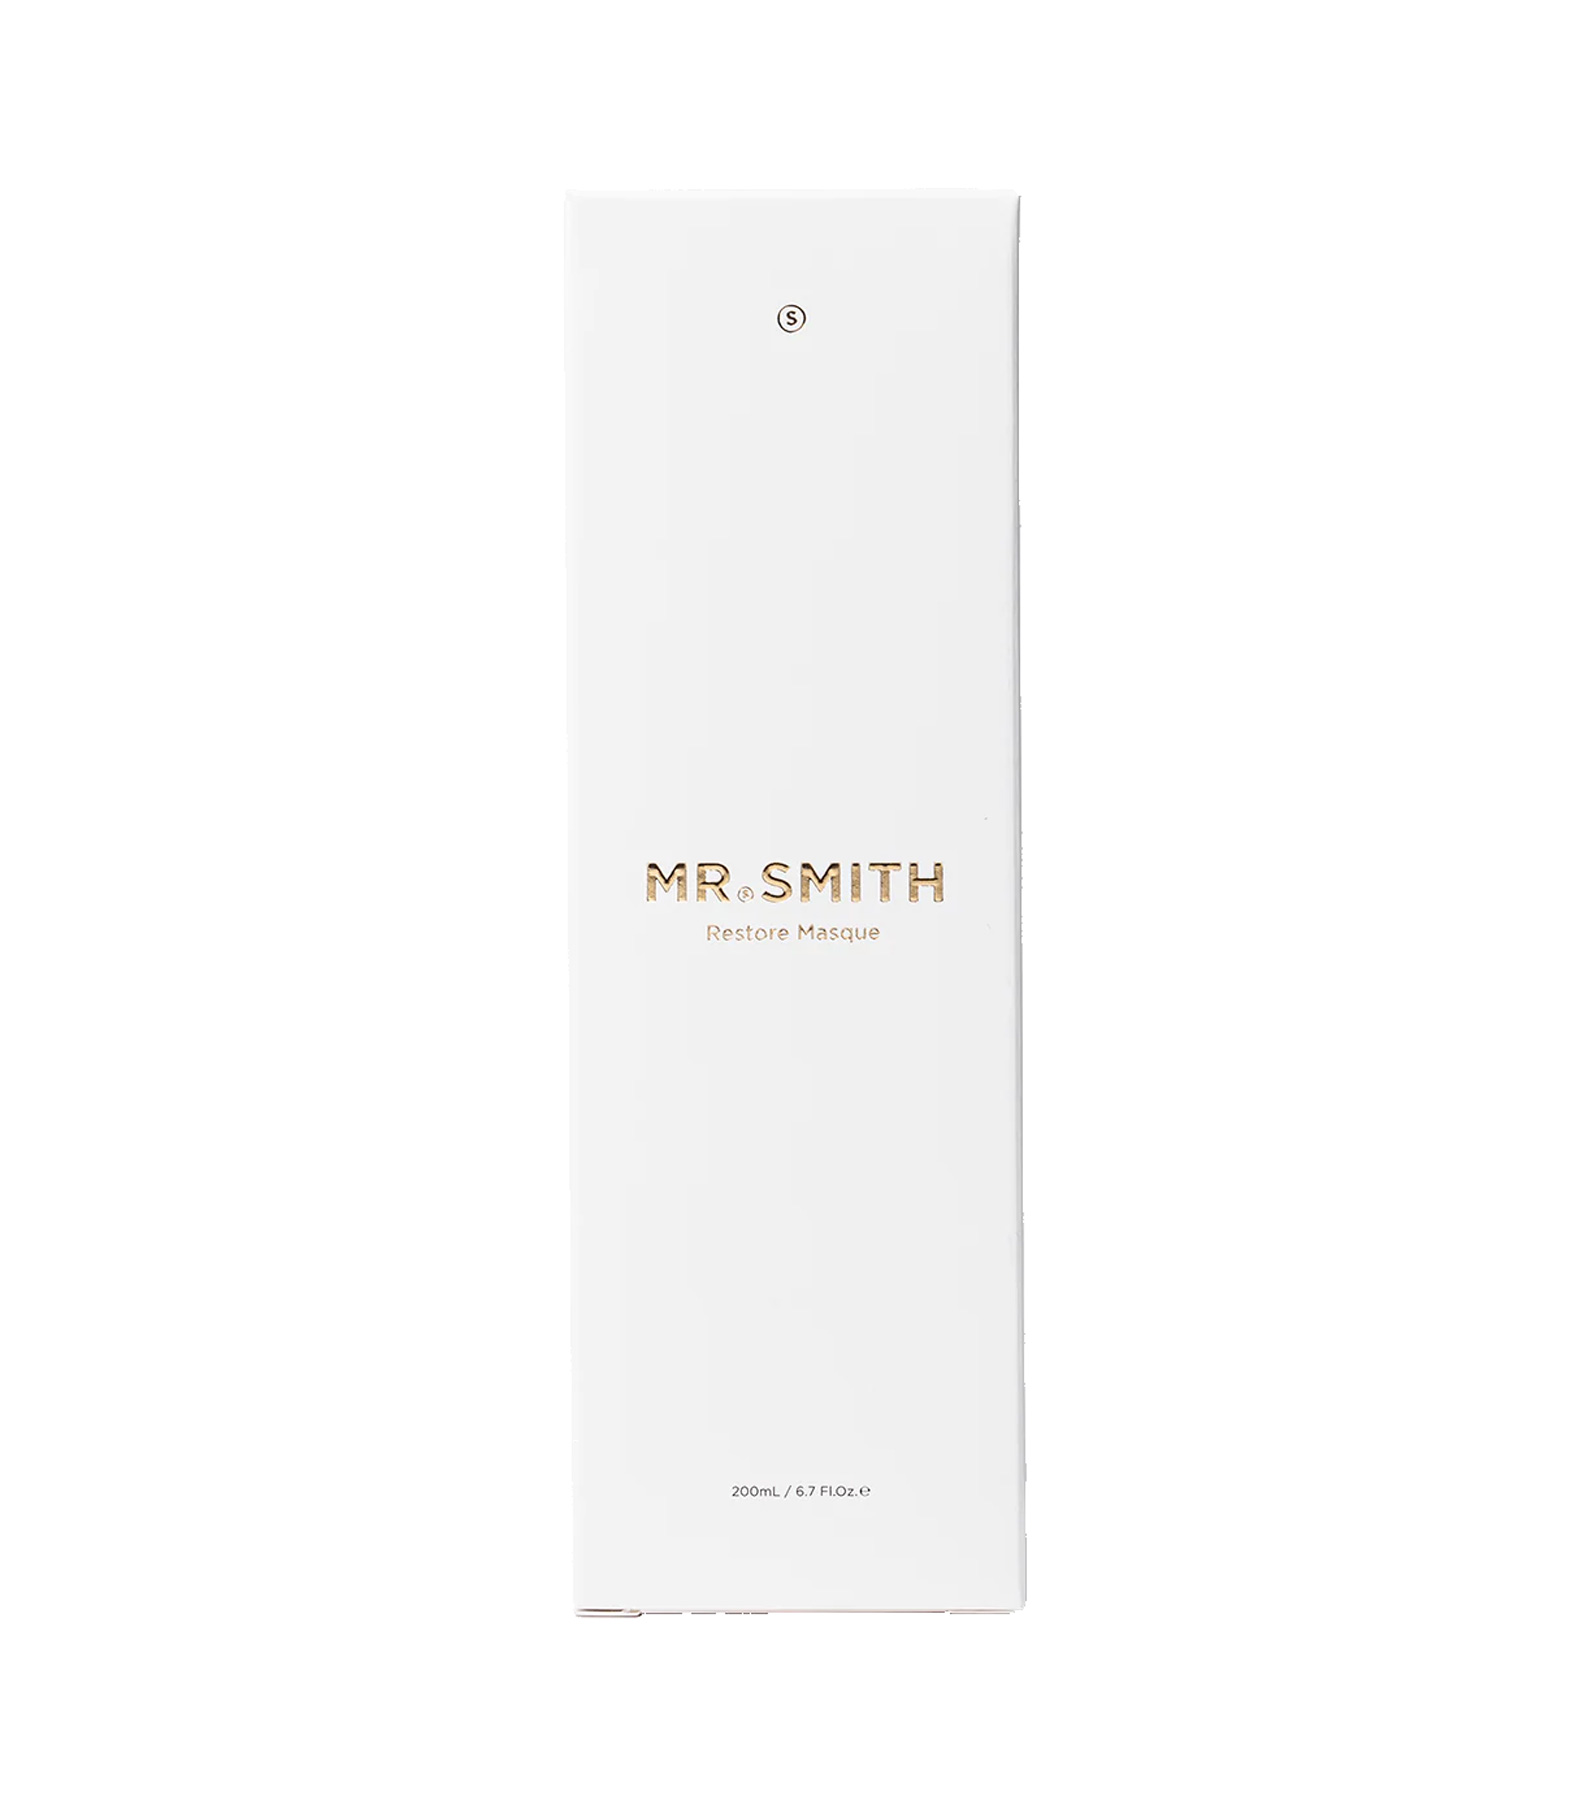 Mr. Smith Restore Masque 200ml